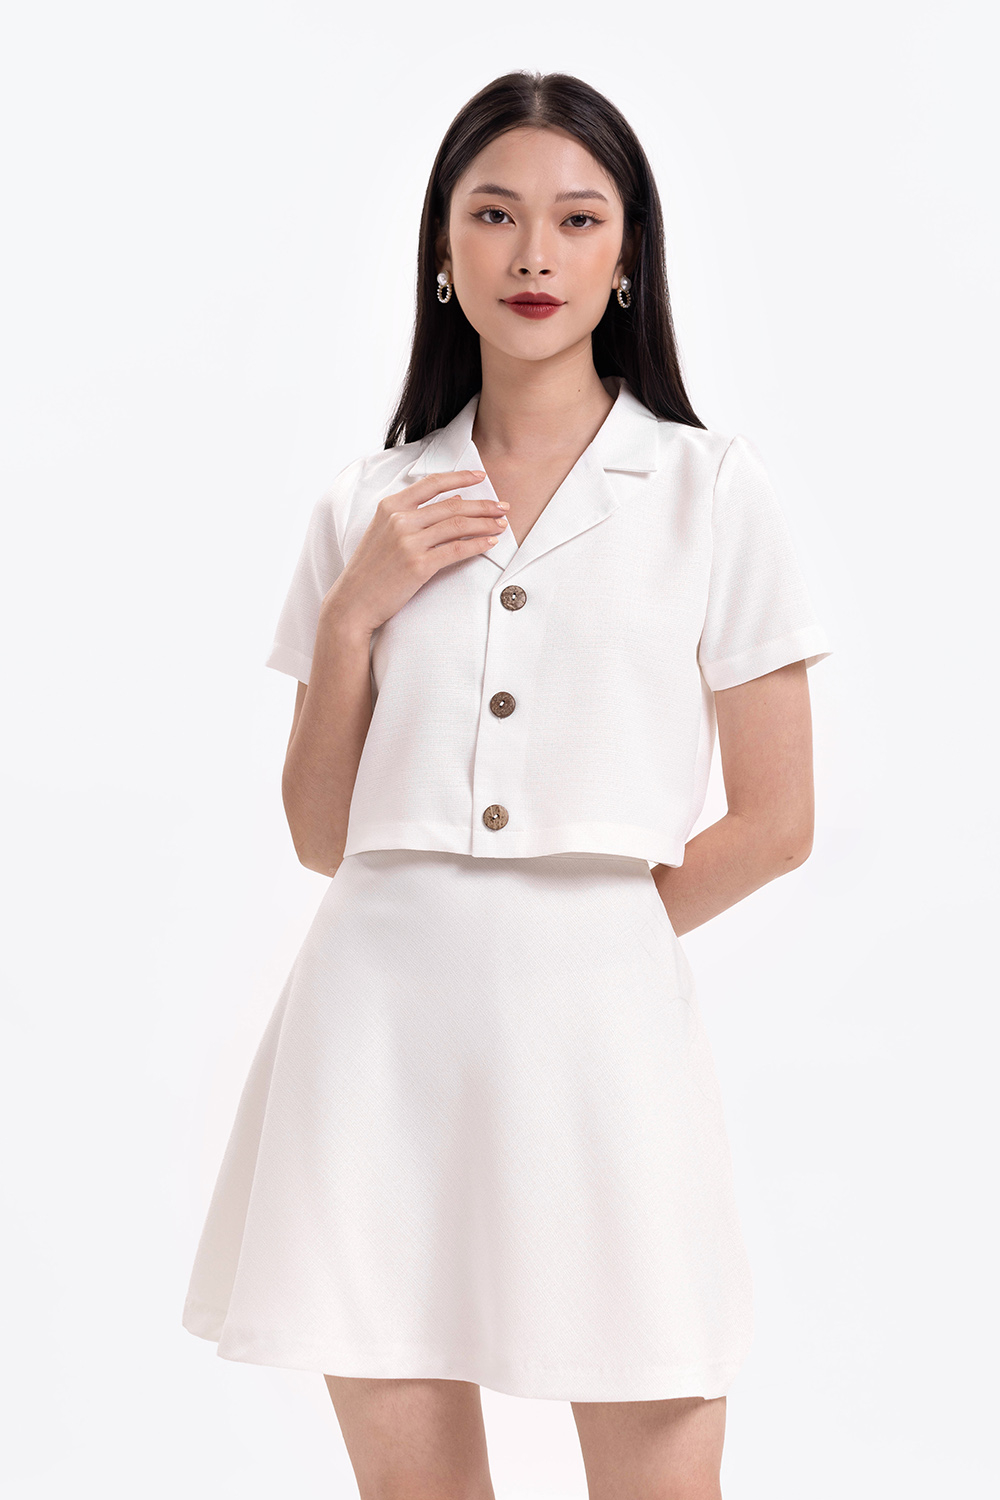 Chân váy trắng chữ A | Shopee Việt Nam